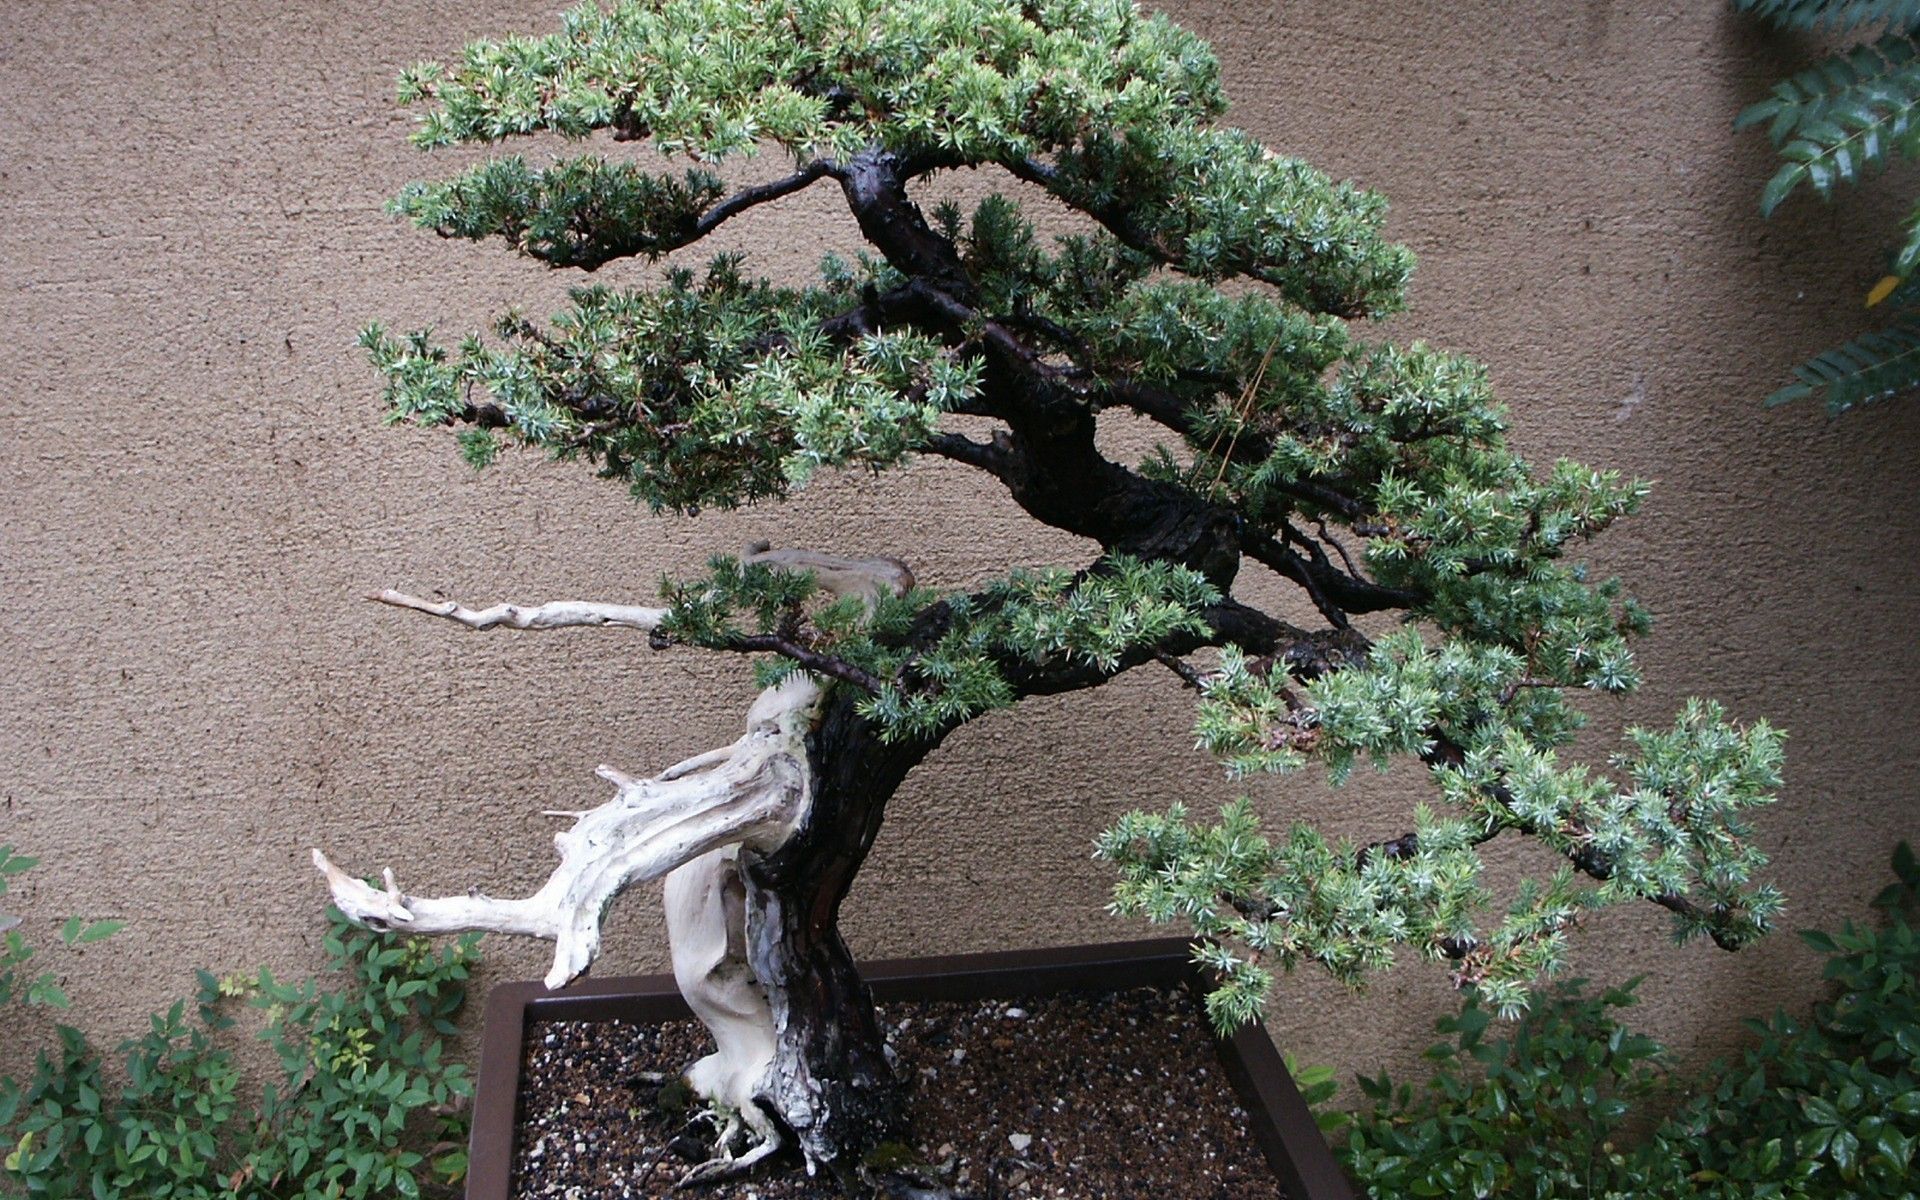  تصویر جالب از درخت بونسای با شاخه سفید و منحصر به فرد 